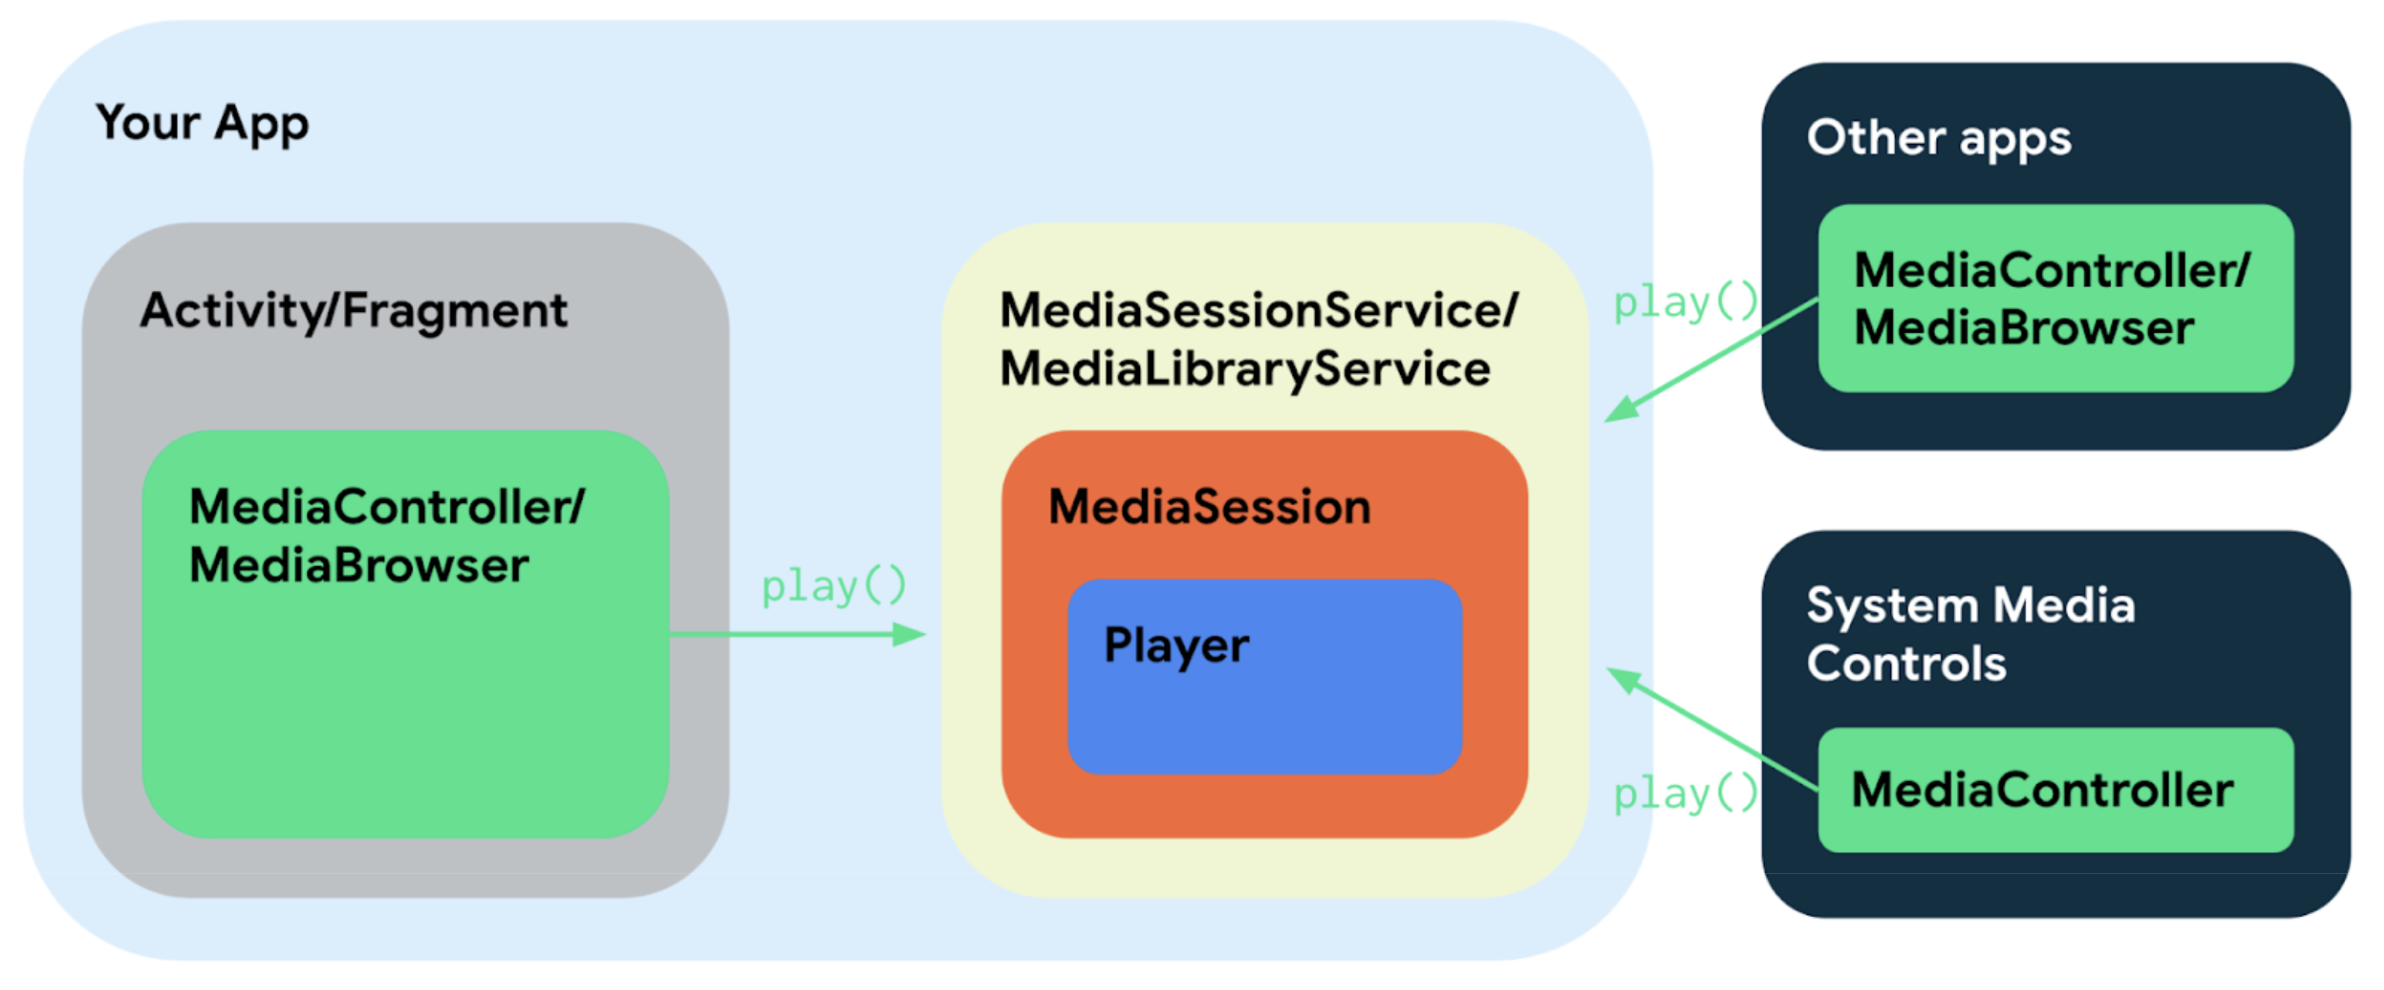 Media3 kullanan bir medya uygulamasının farklı bileşenleri, arayüz ve sınıf paylaşmaları sayesinde birbirlerine birkaç basit şekilde bağlanır.